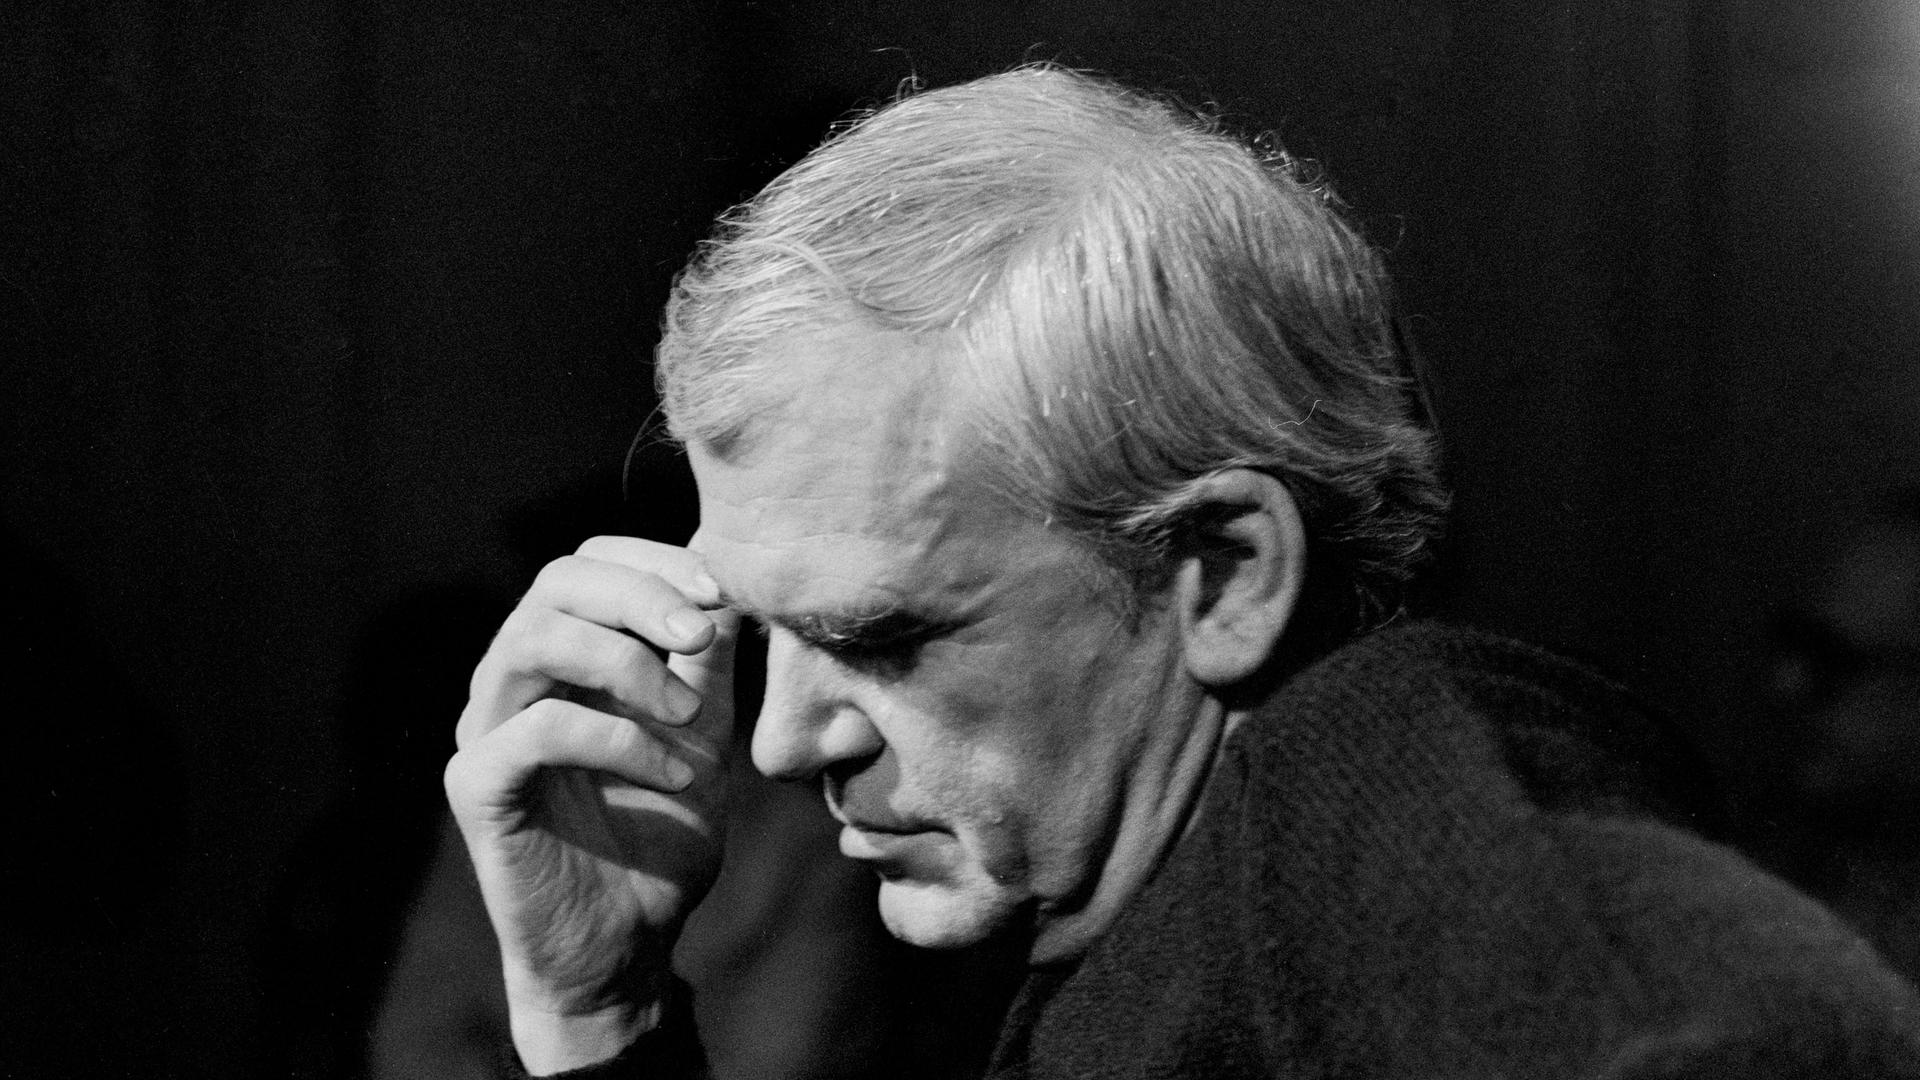 Eine schwarz-weiß Aufnahme zeigt Milan Kundera in sinnierender Pose.